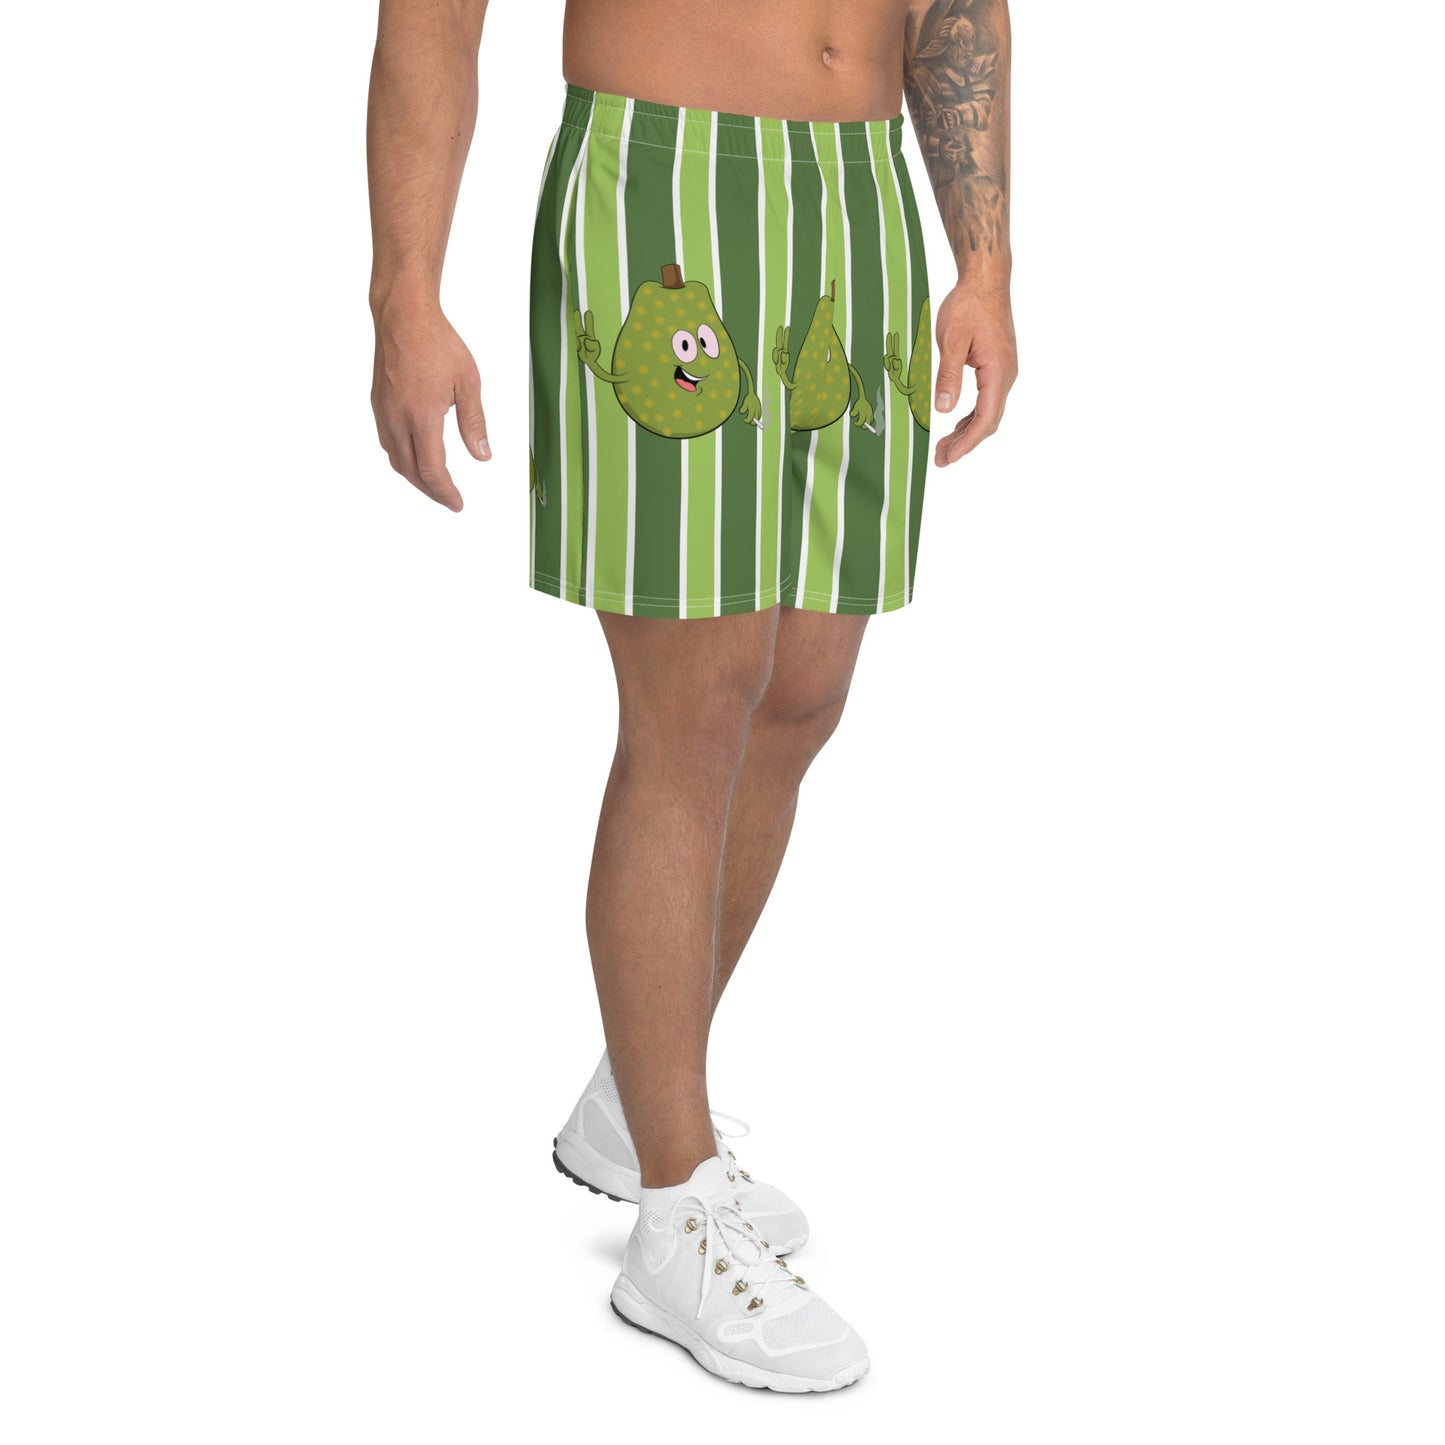 Stoner Veg-geez Jackfruit Recycled Athletic Shorts